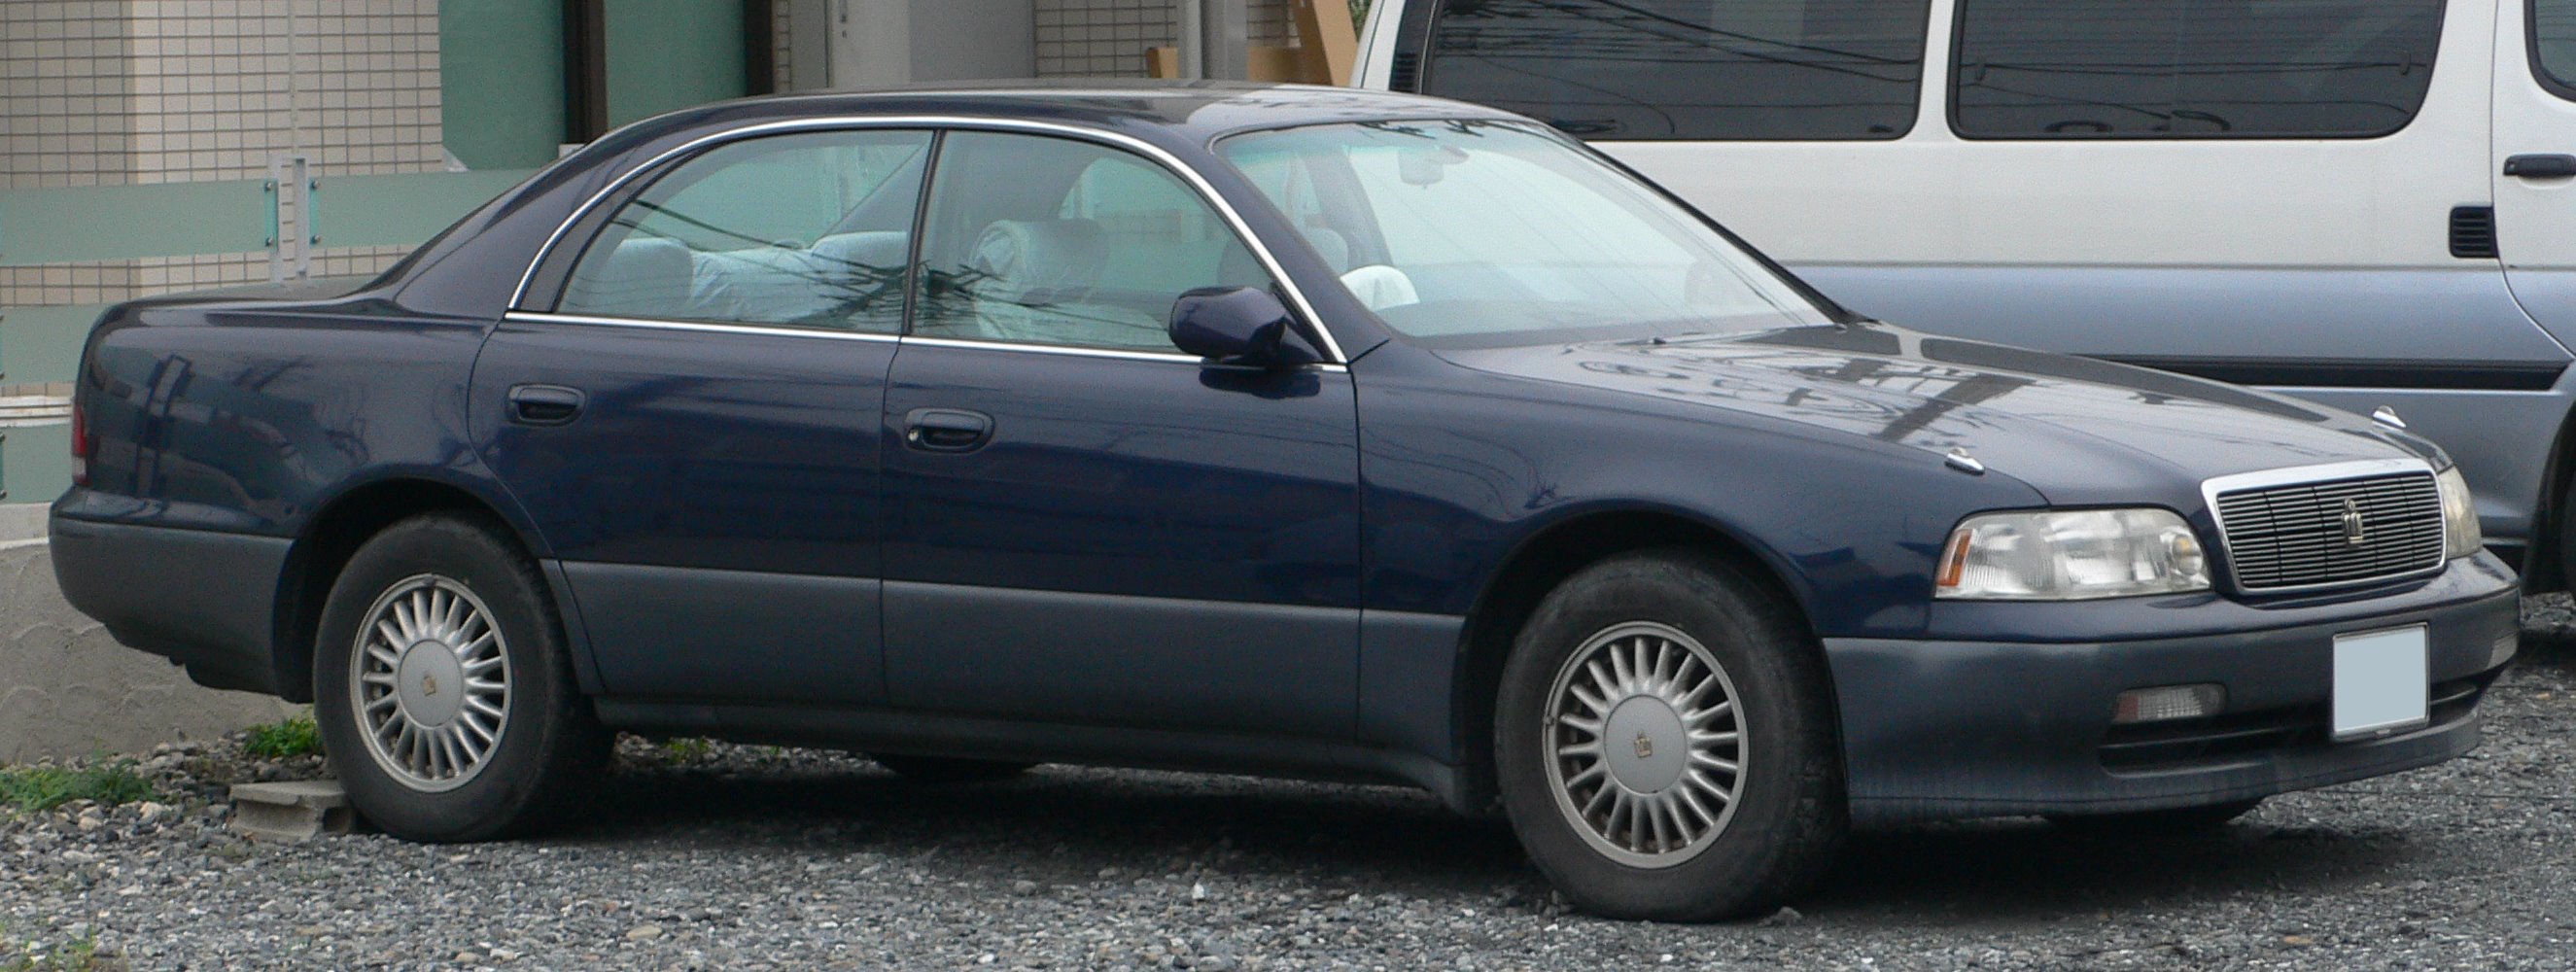 Toyota Crown Majesta I (S140) 1991 - 1995 Sedan #7